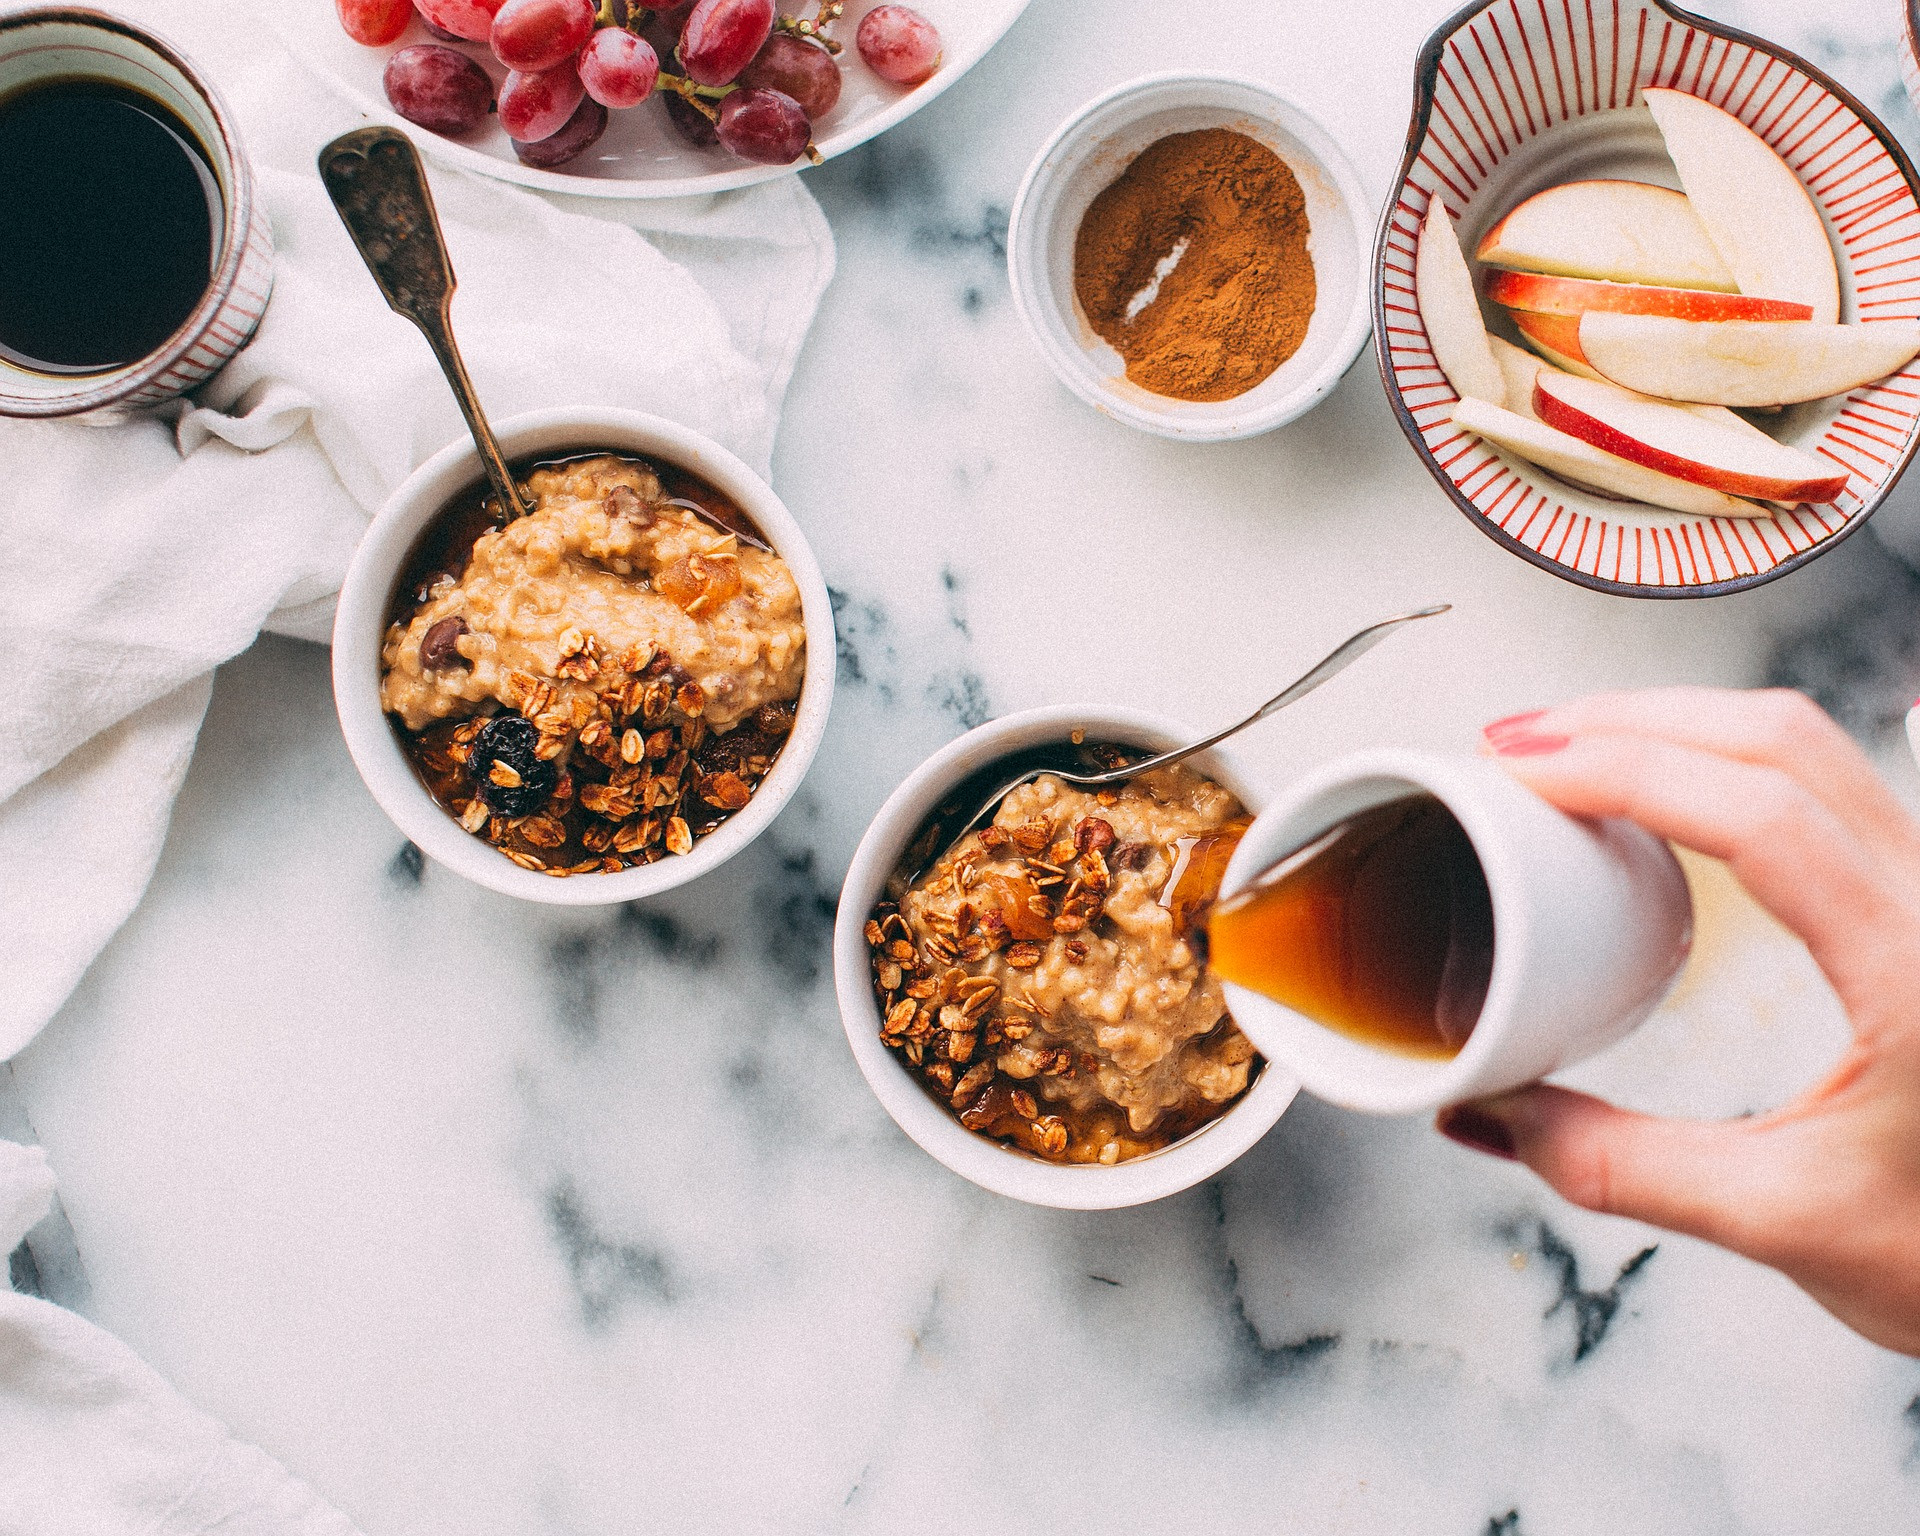 Ľudia, ktorí jedia raňajky, uvádzajú, že majú lepšiu náladu a viac energie po celý deň.
Štúdie zároveň potvrdili, že vynechanie akéhokoľvek jedla počas dňa vedie k väčšiemu pocitu únavy na jeho konci.
